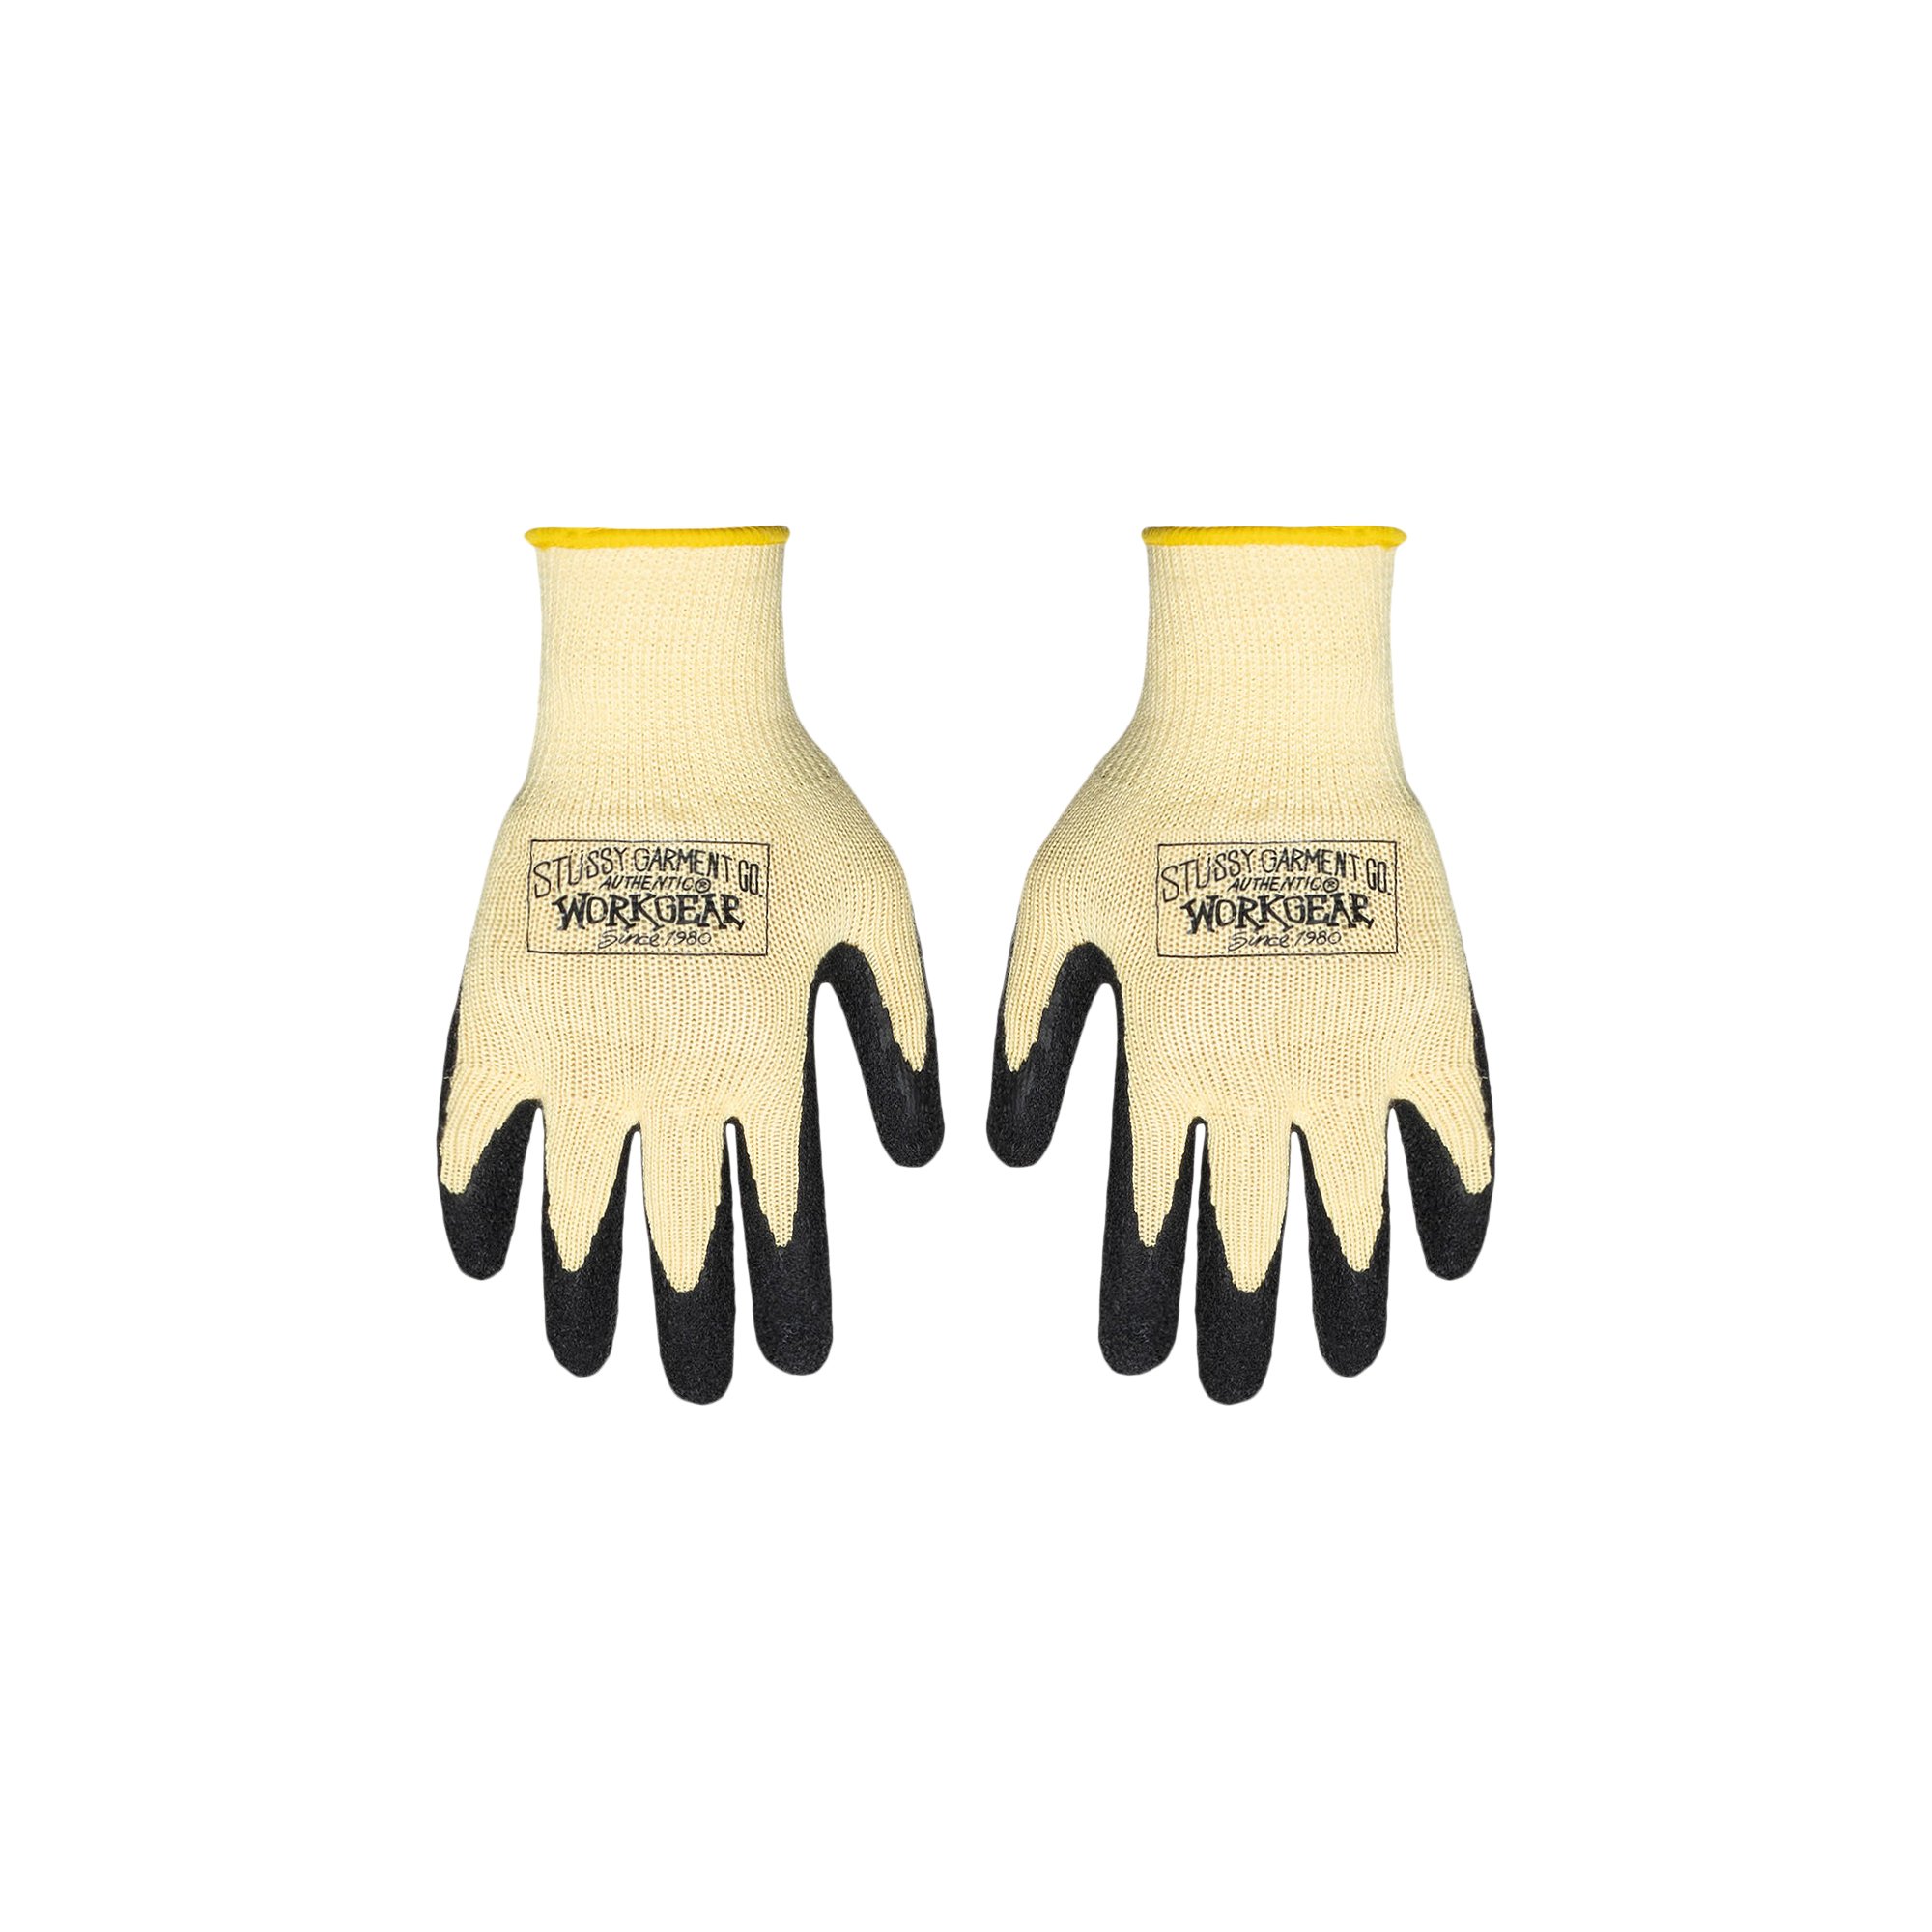 Buy Stussy Work Gloves 'Light Yellow' - 138891 LIGH | GOAT